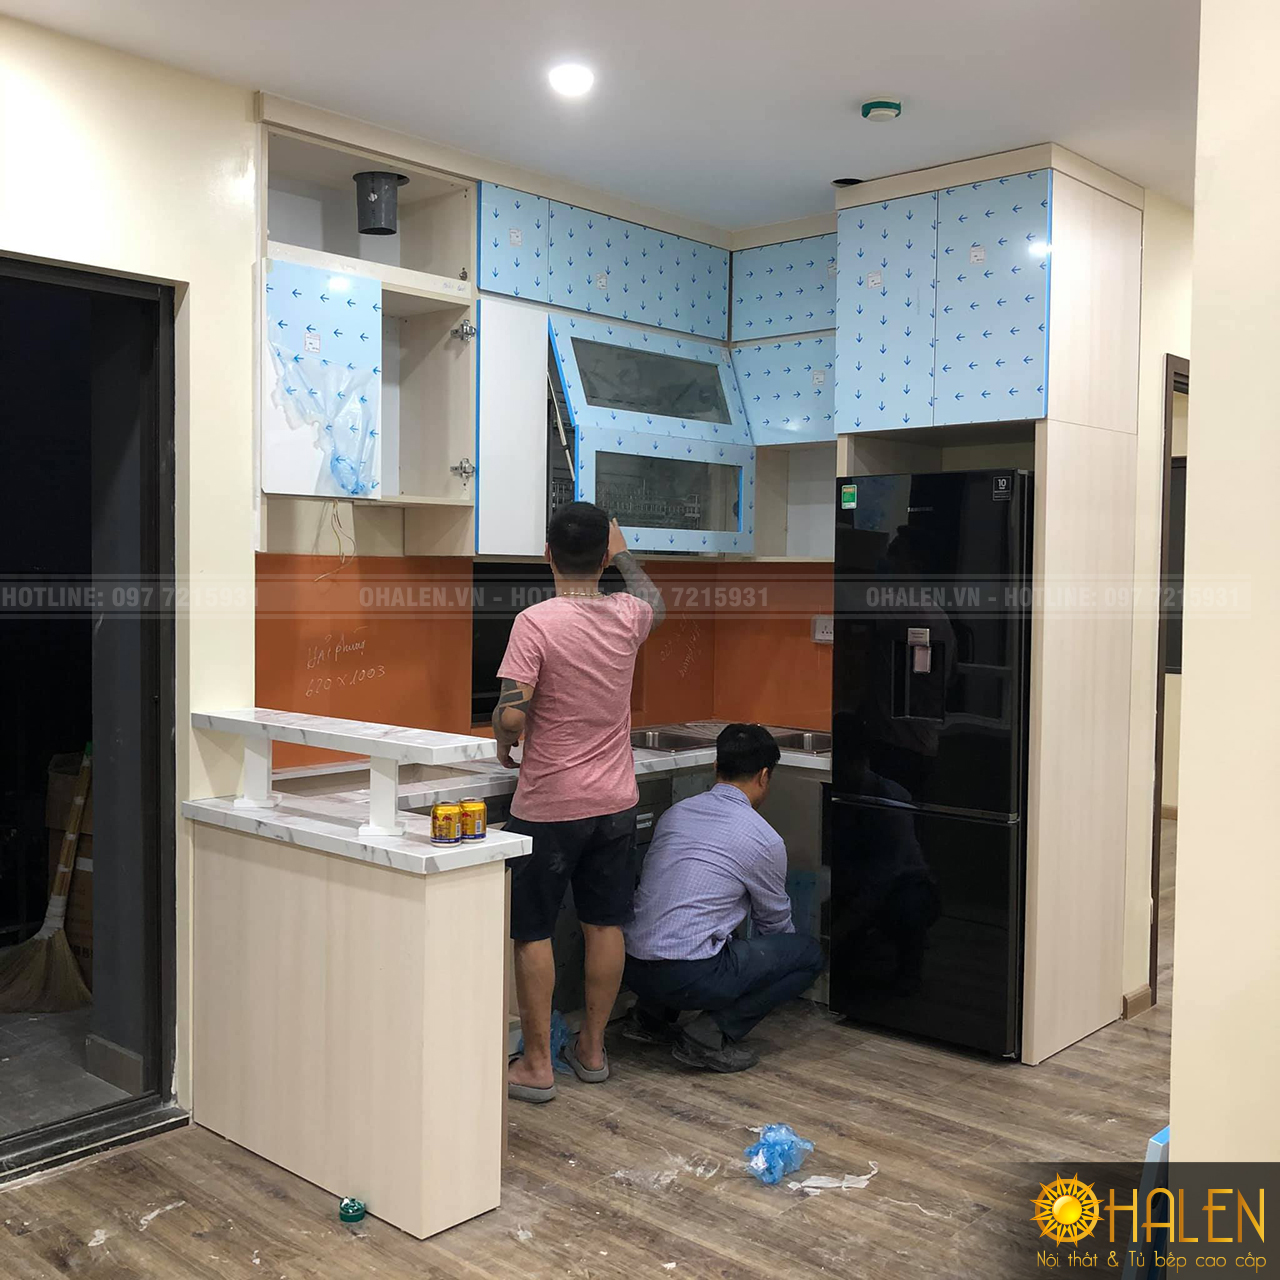 OHALEN thi công đóng tủ bếp tại Hoàng Liệt, Hoàng Mai,Hà Nội